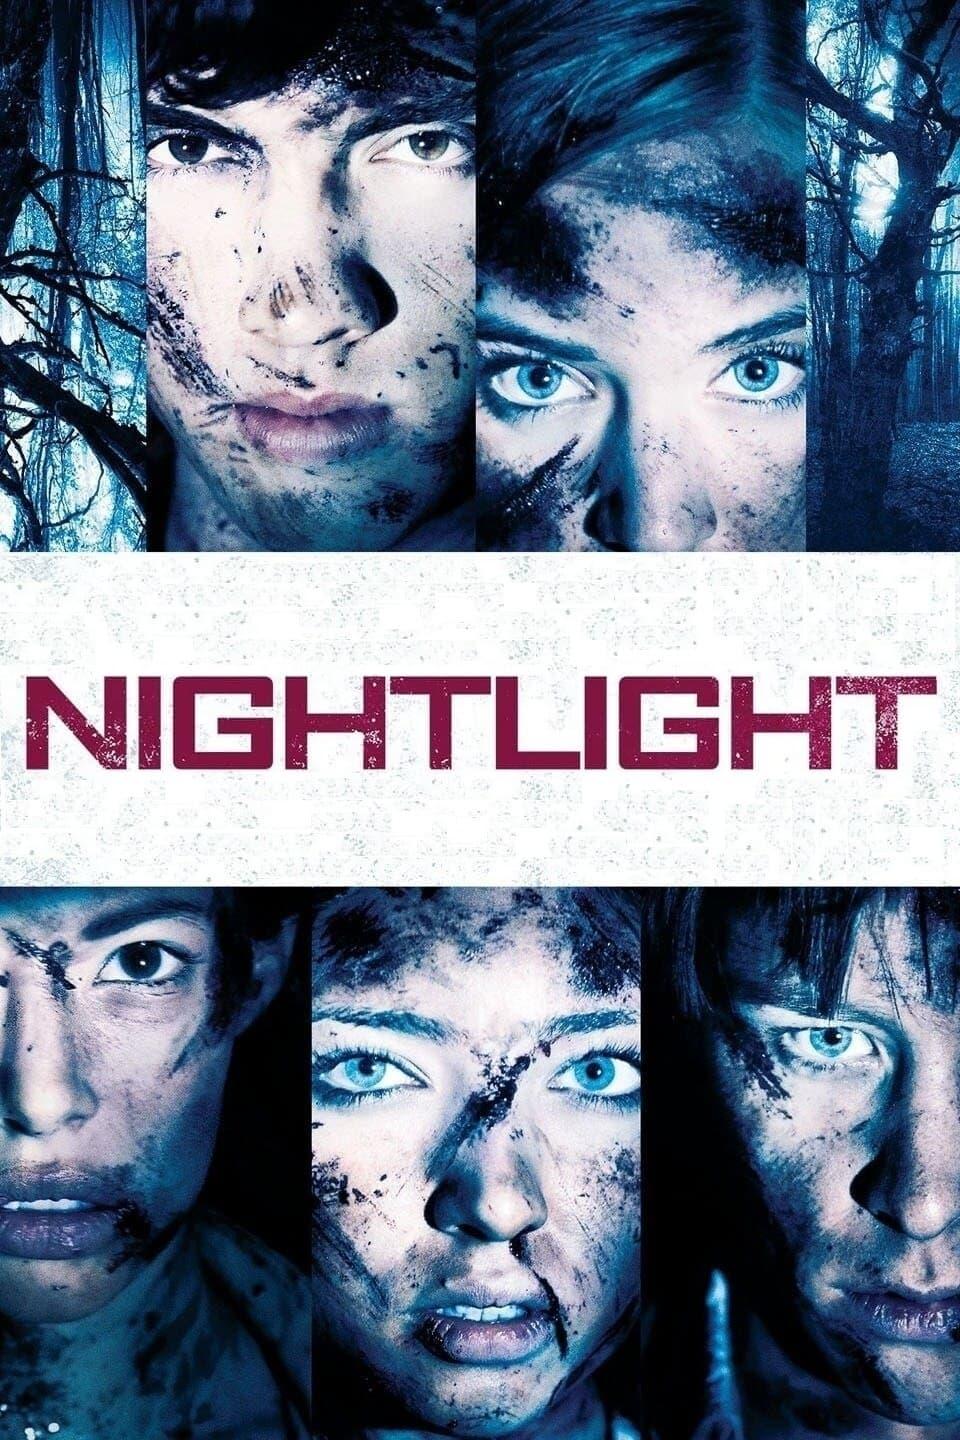 Nightlight poster